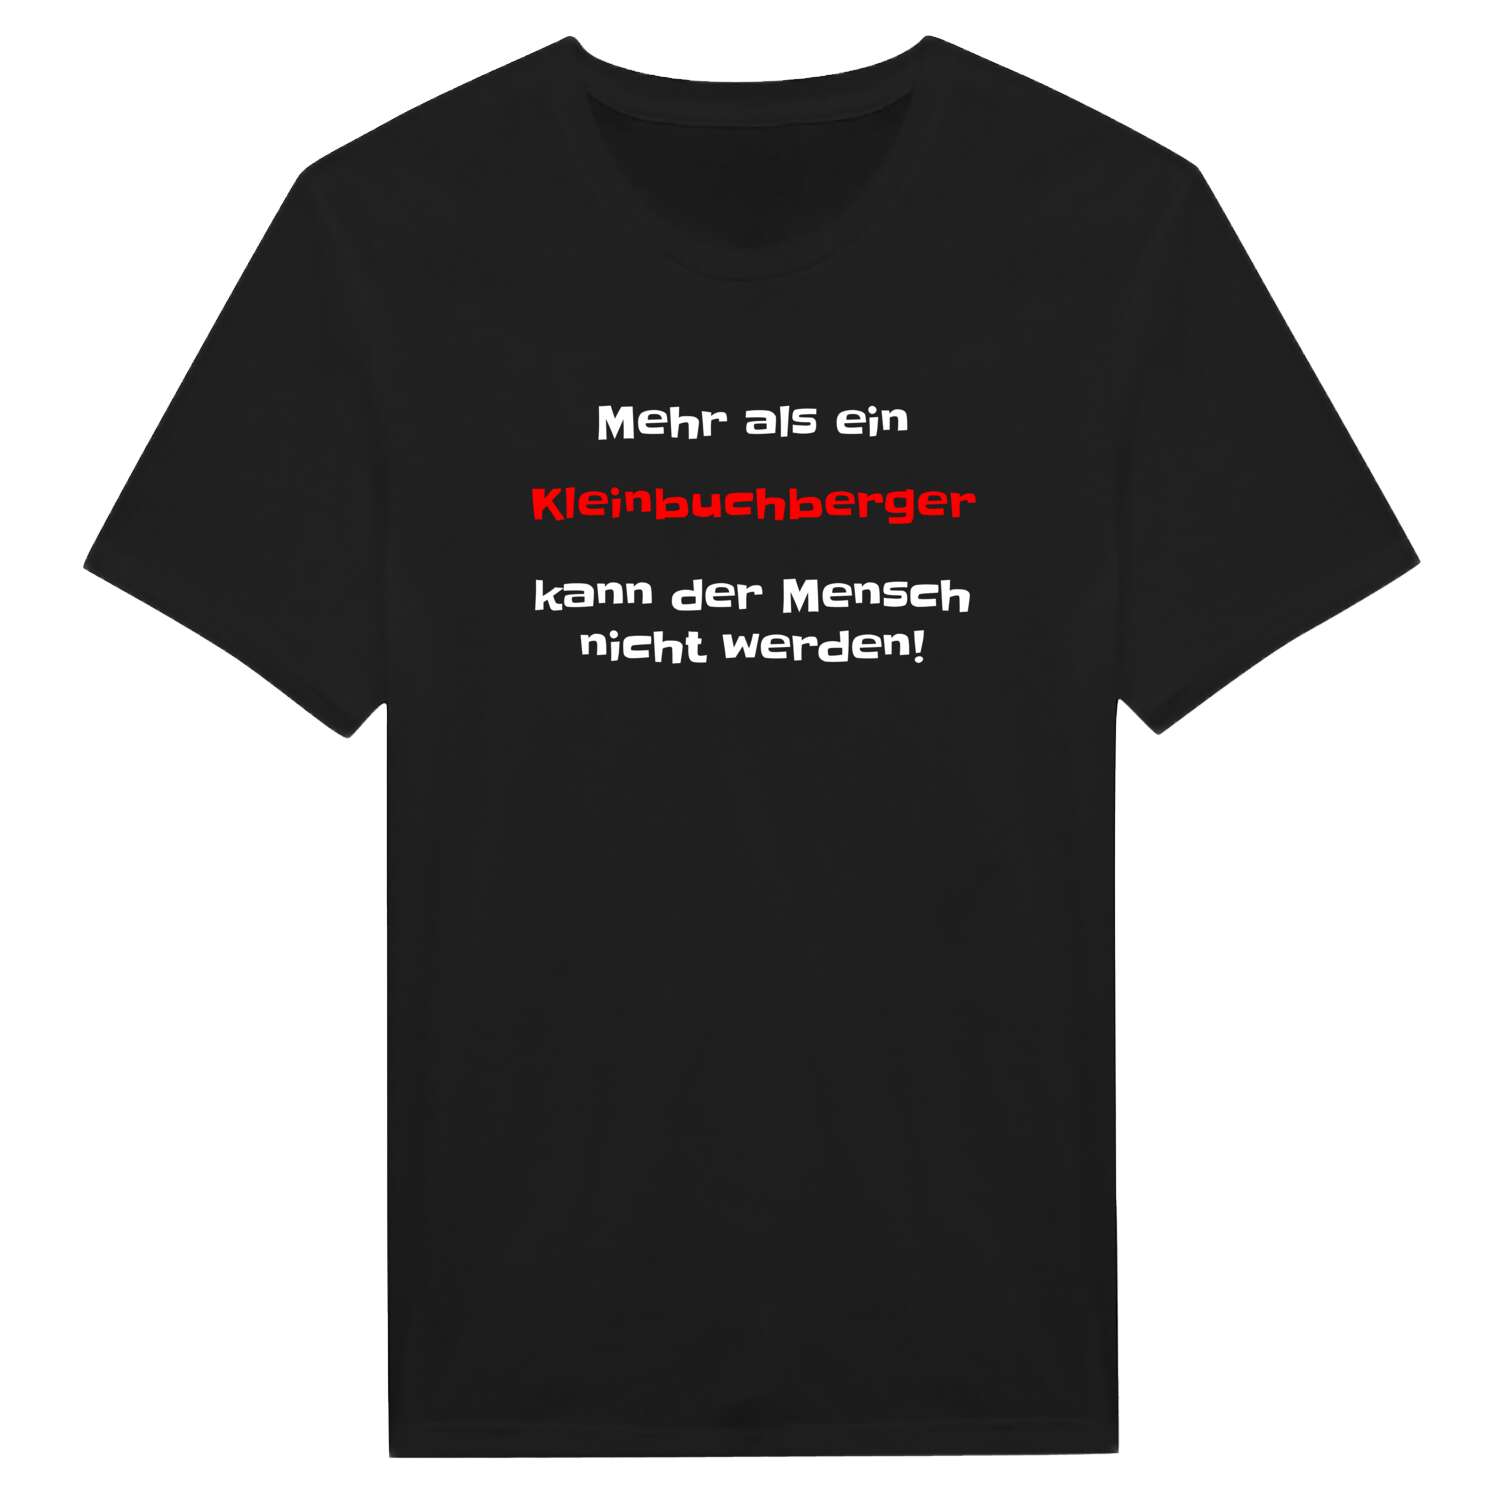 Kleinbuchberg T-Shirt »Mehr als ein«